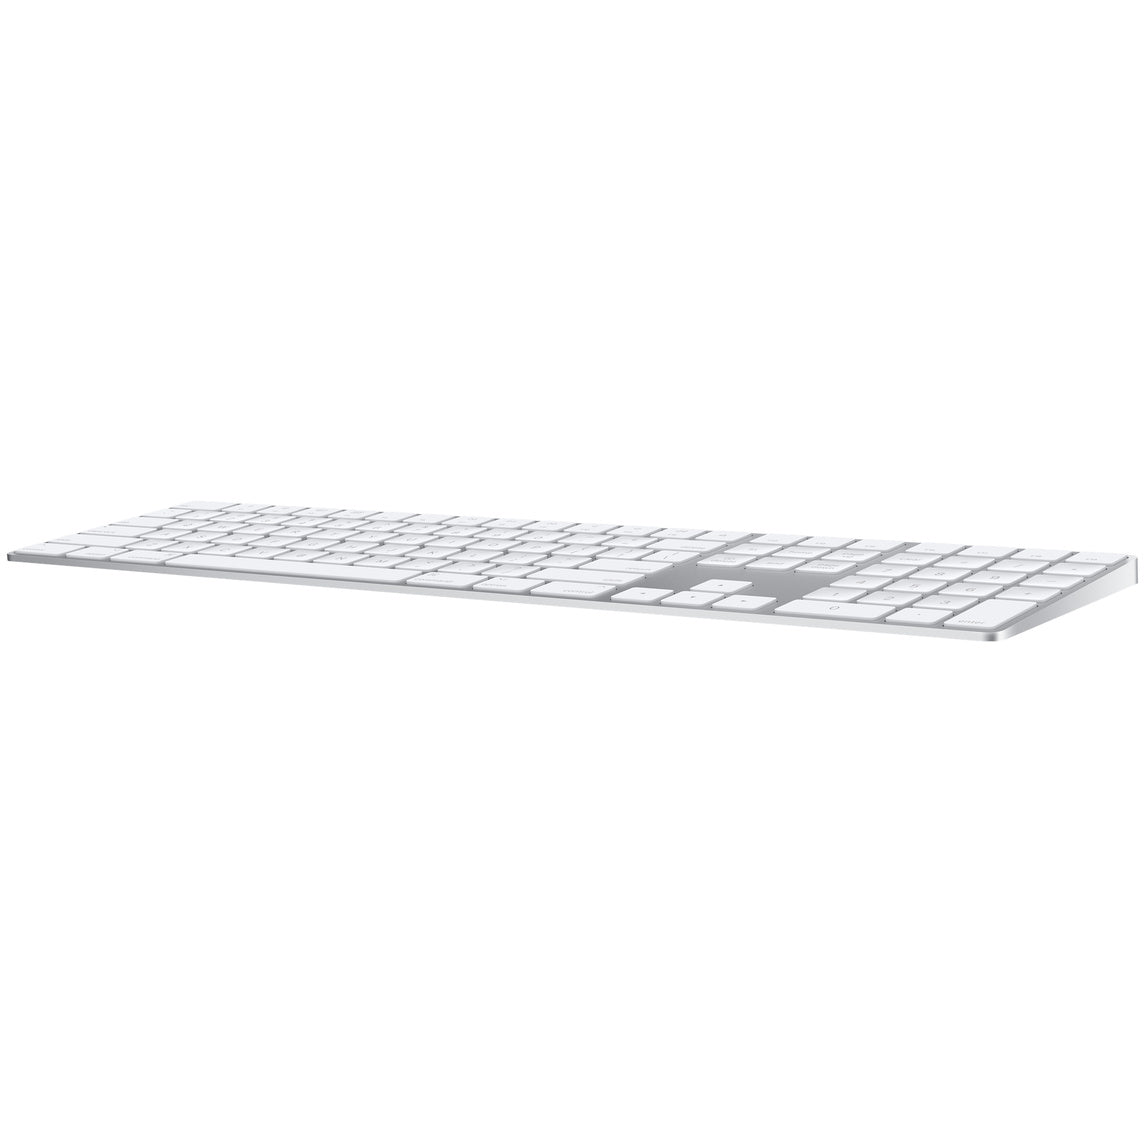 Magic Keyboard with Numeric Keypad - Arabic - Silver